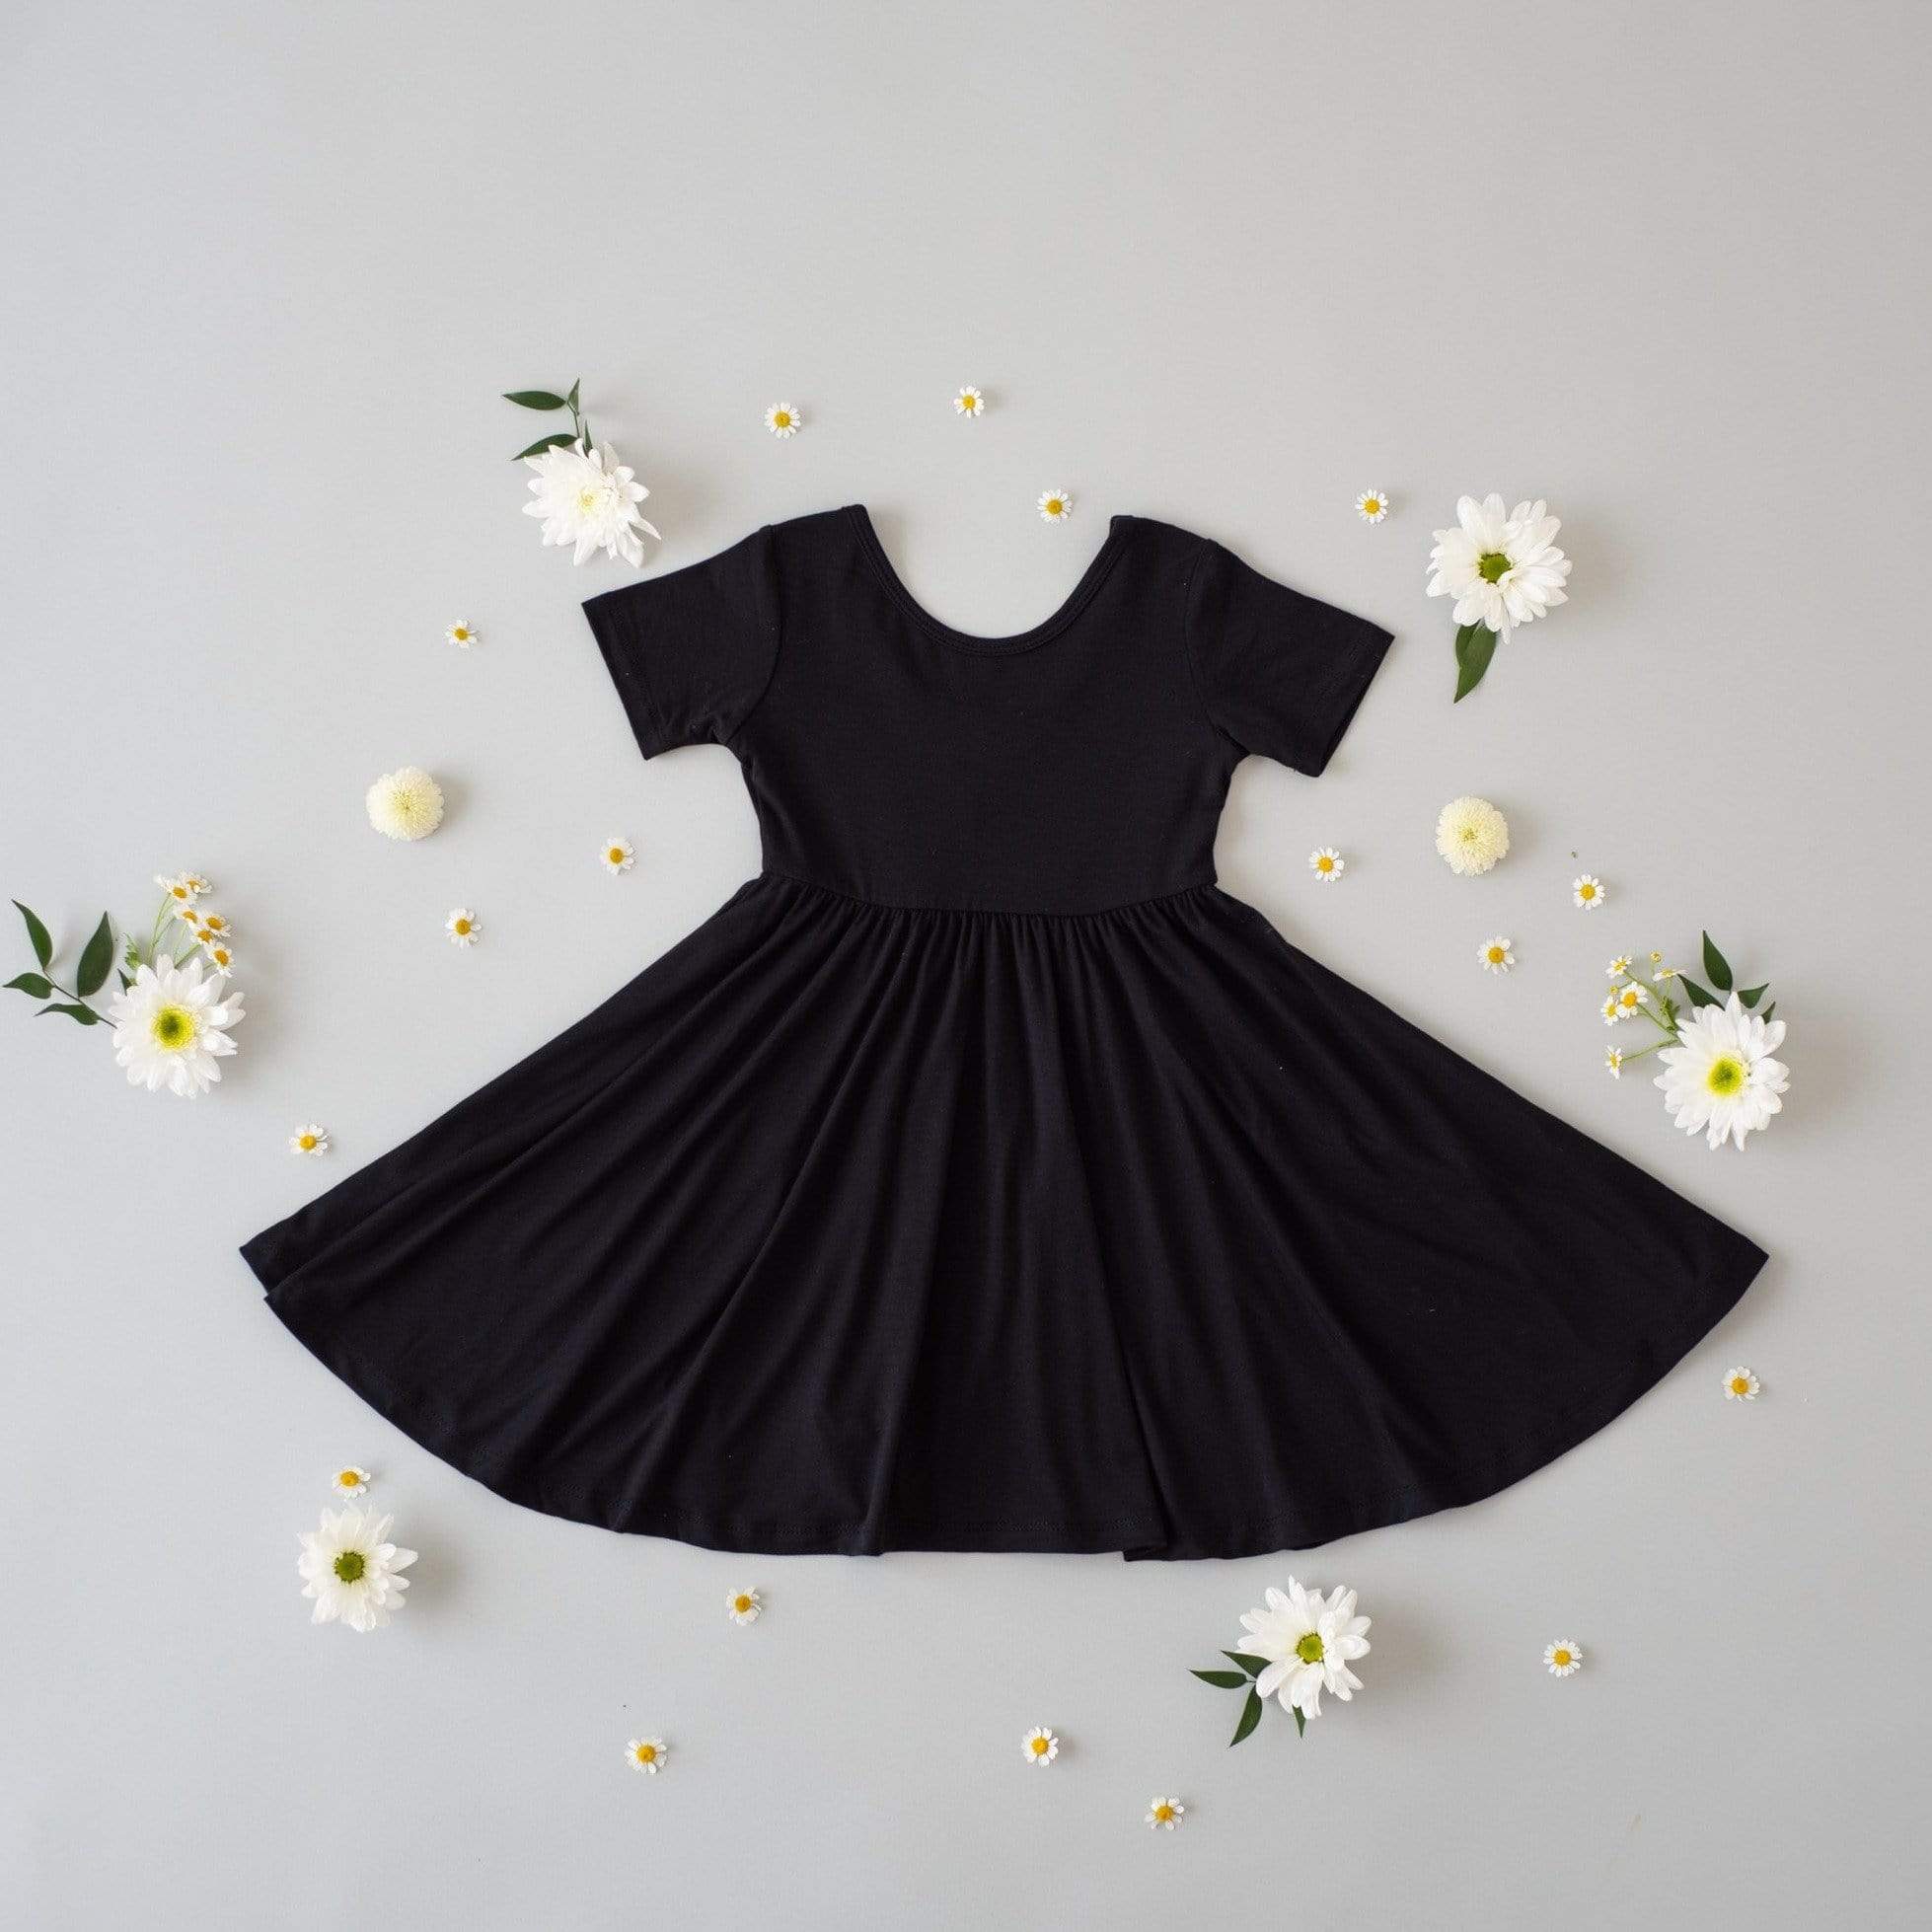 Kyte Baby Short Sleeve Twirl Dress with ballerina neckline in Midnight